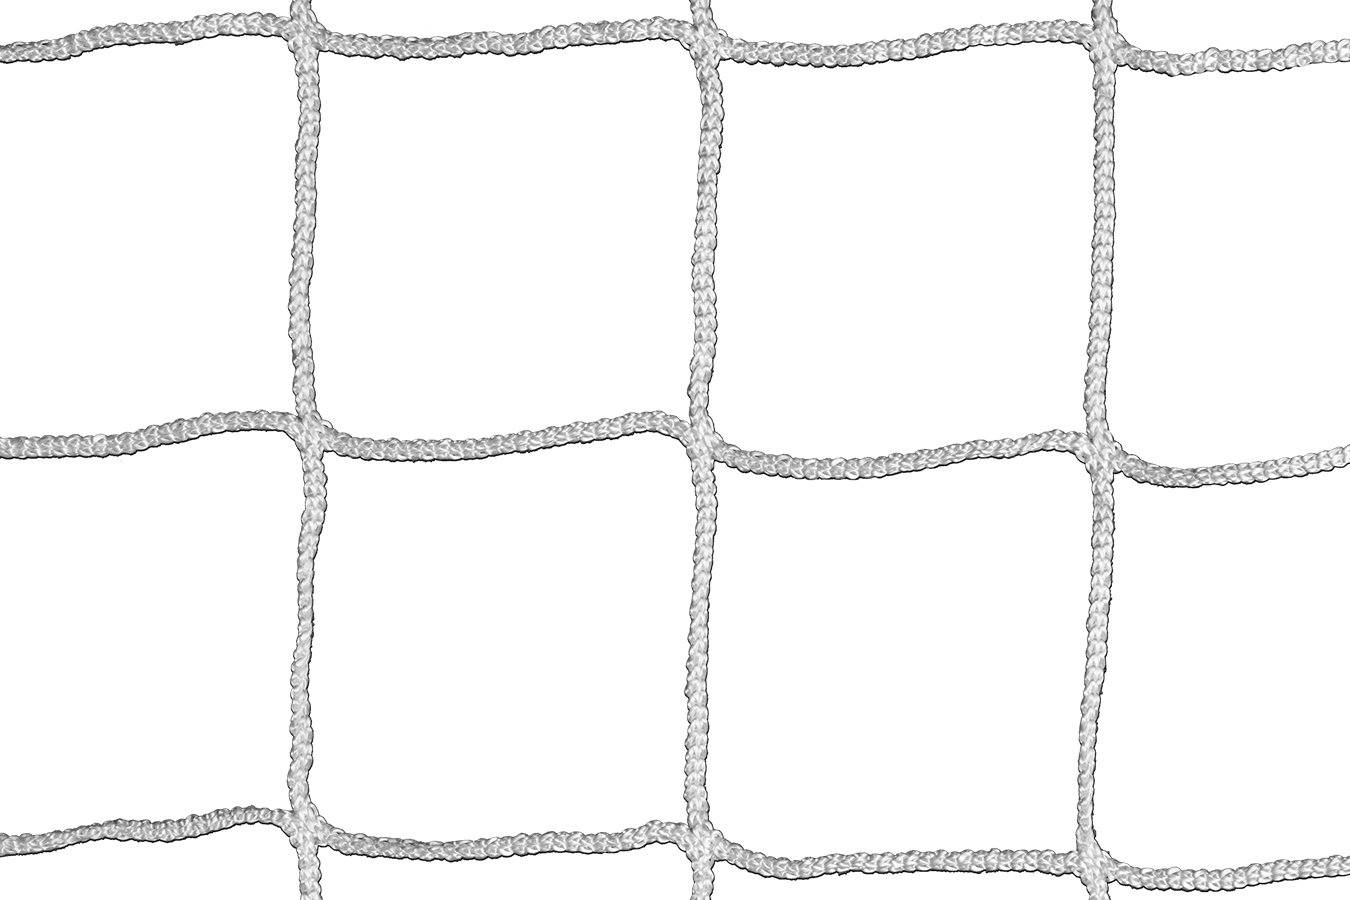 Kwikgoal 3mm Braided Knotless Net | 3B6822 Nets Kwikgoal 